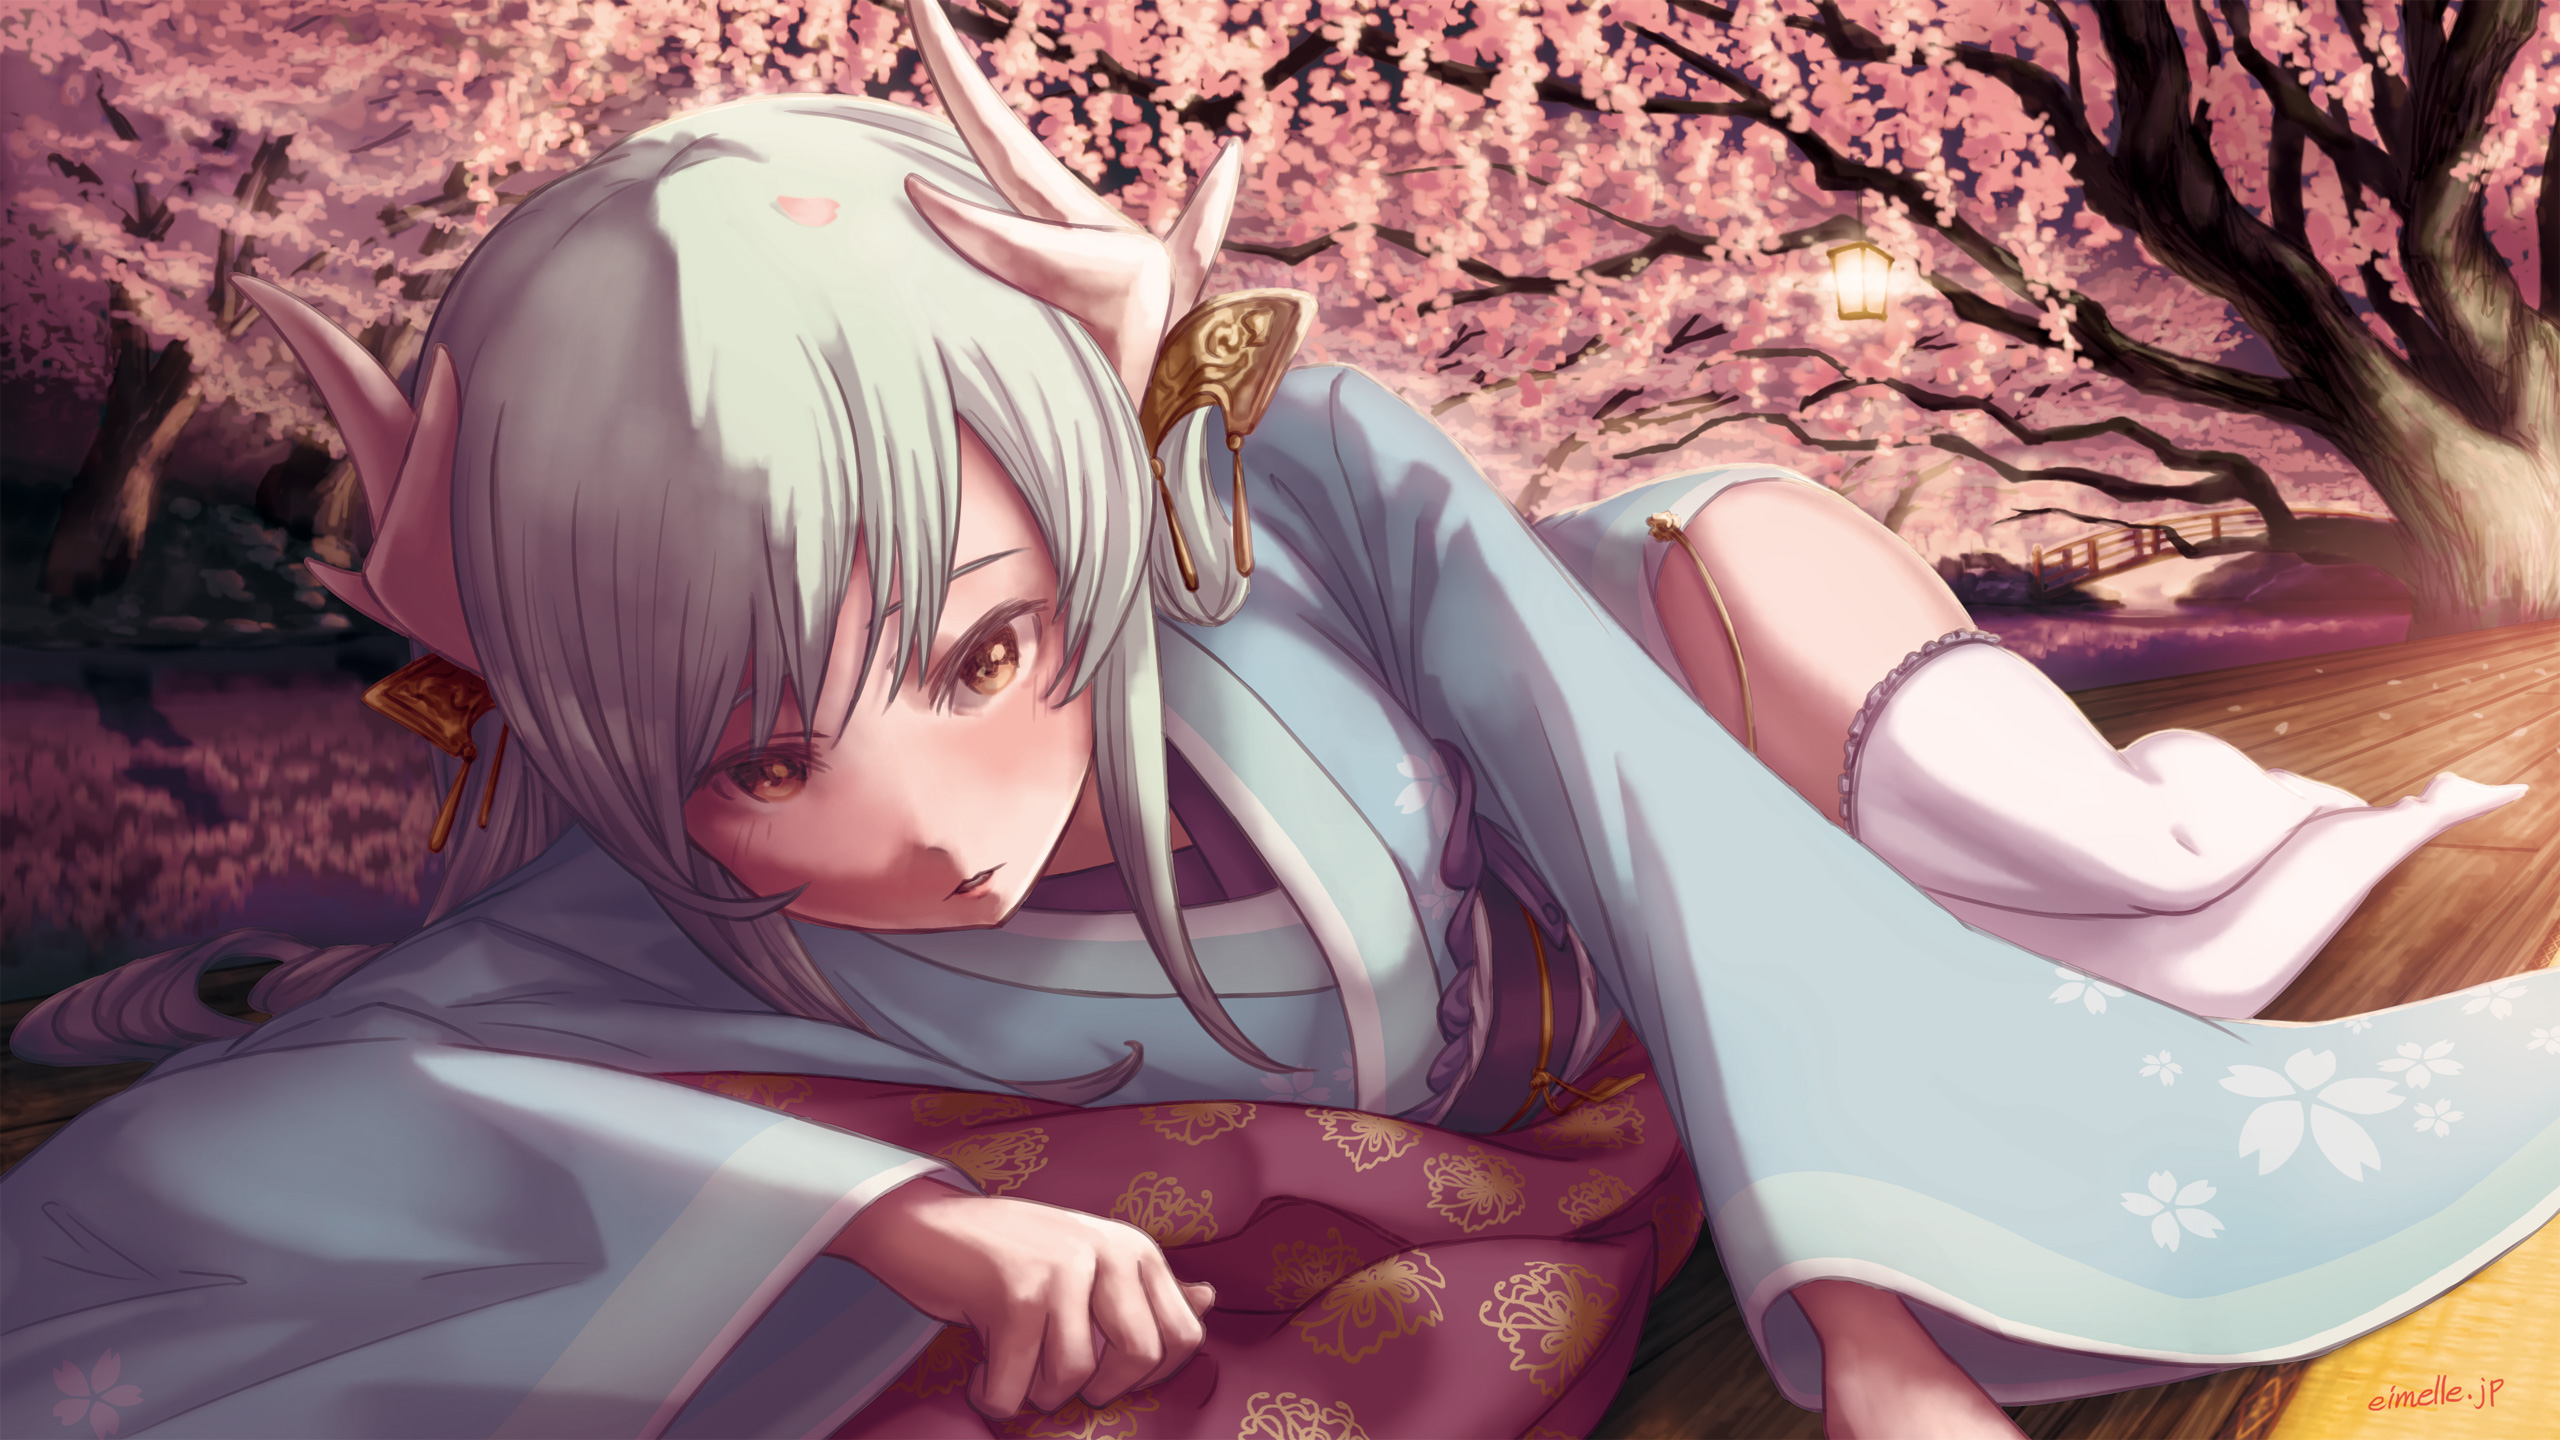 Fatego 夜桜とマスターにせまる清姫の絵 にくきゅうblog